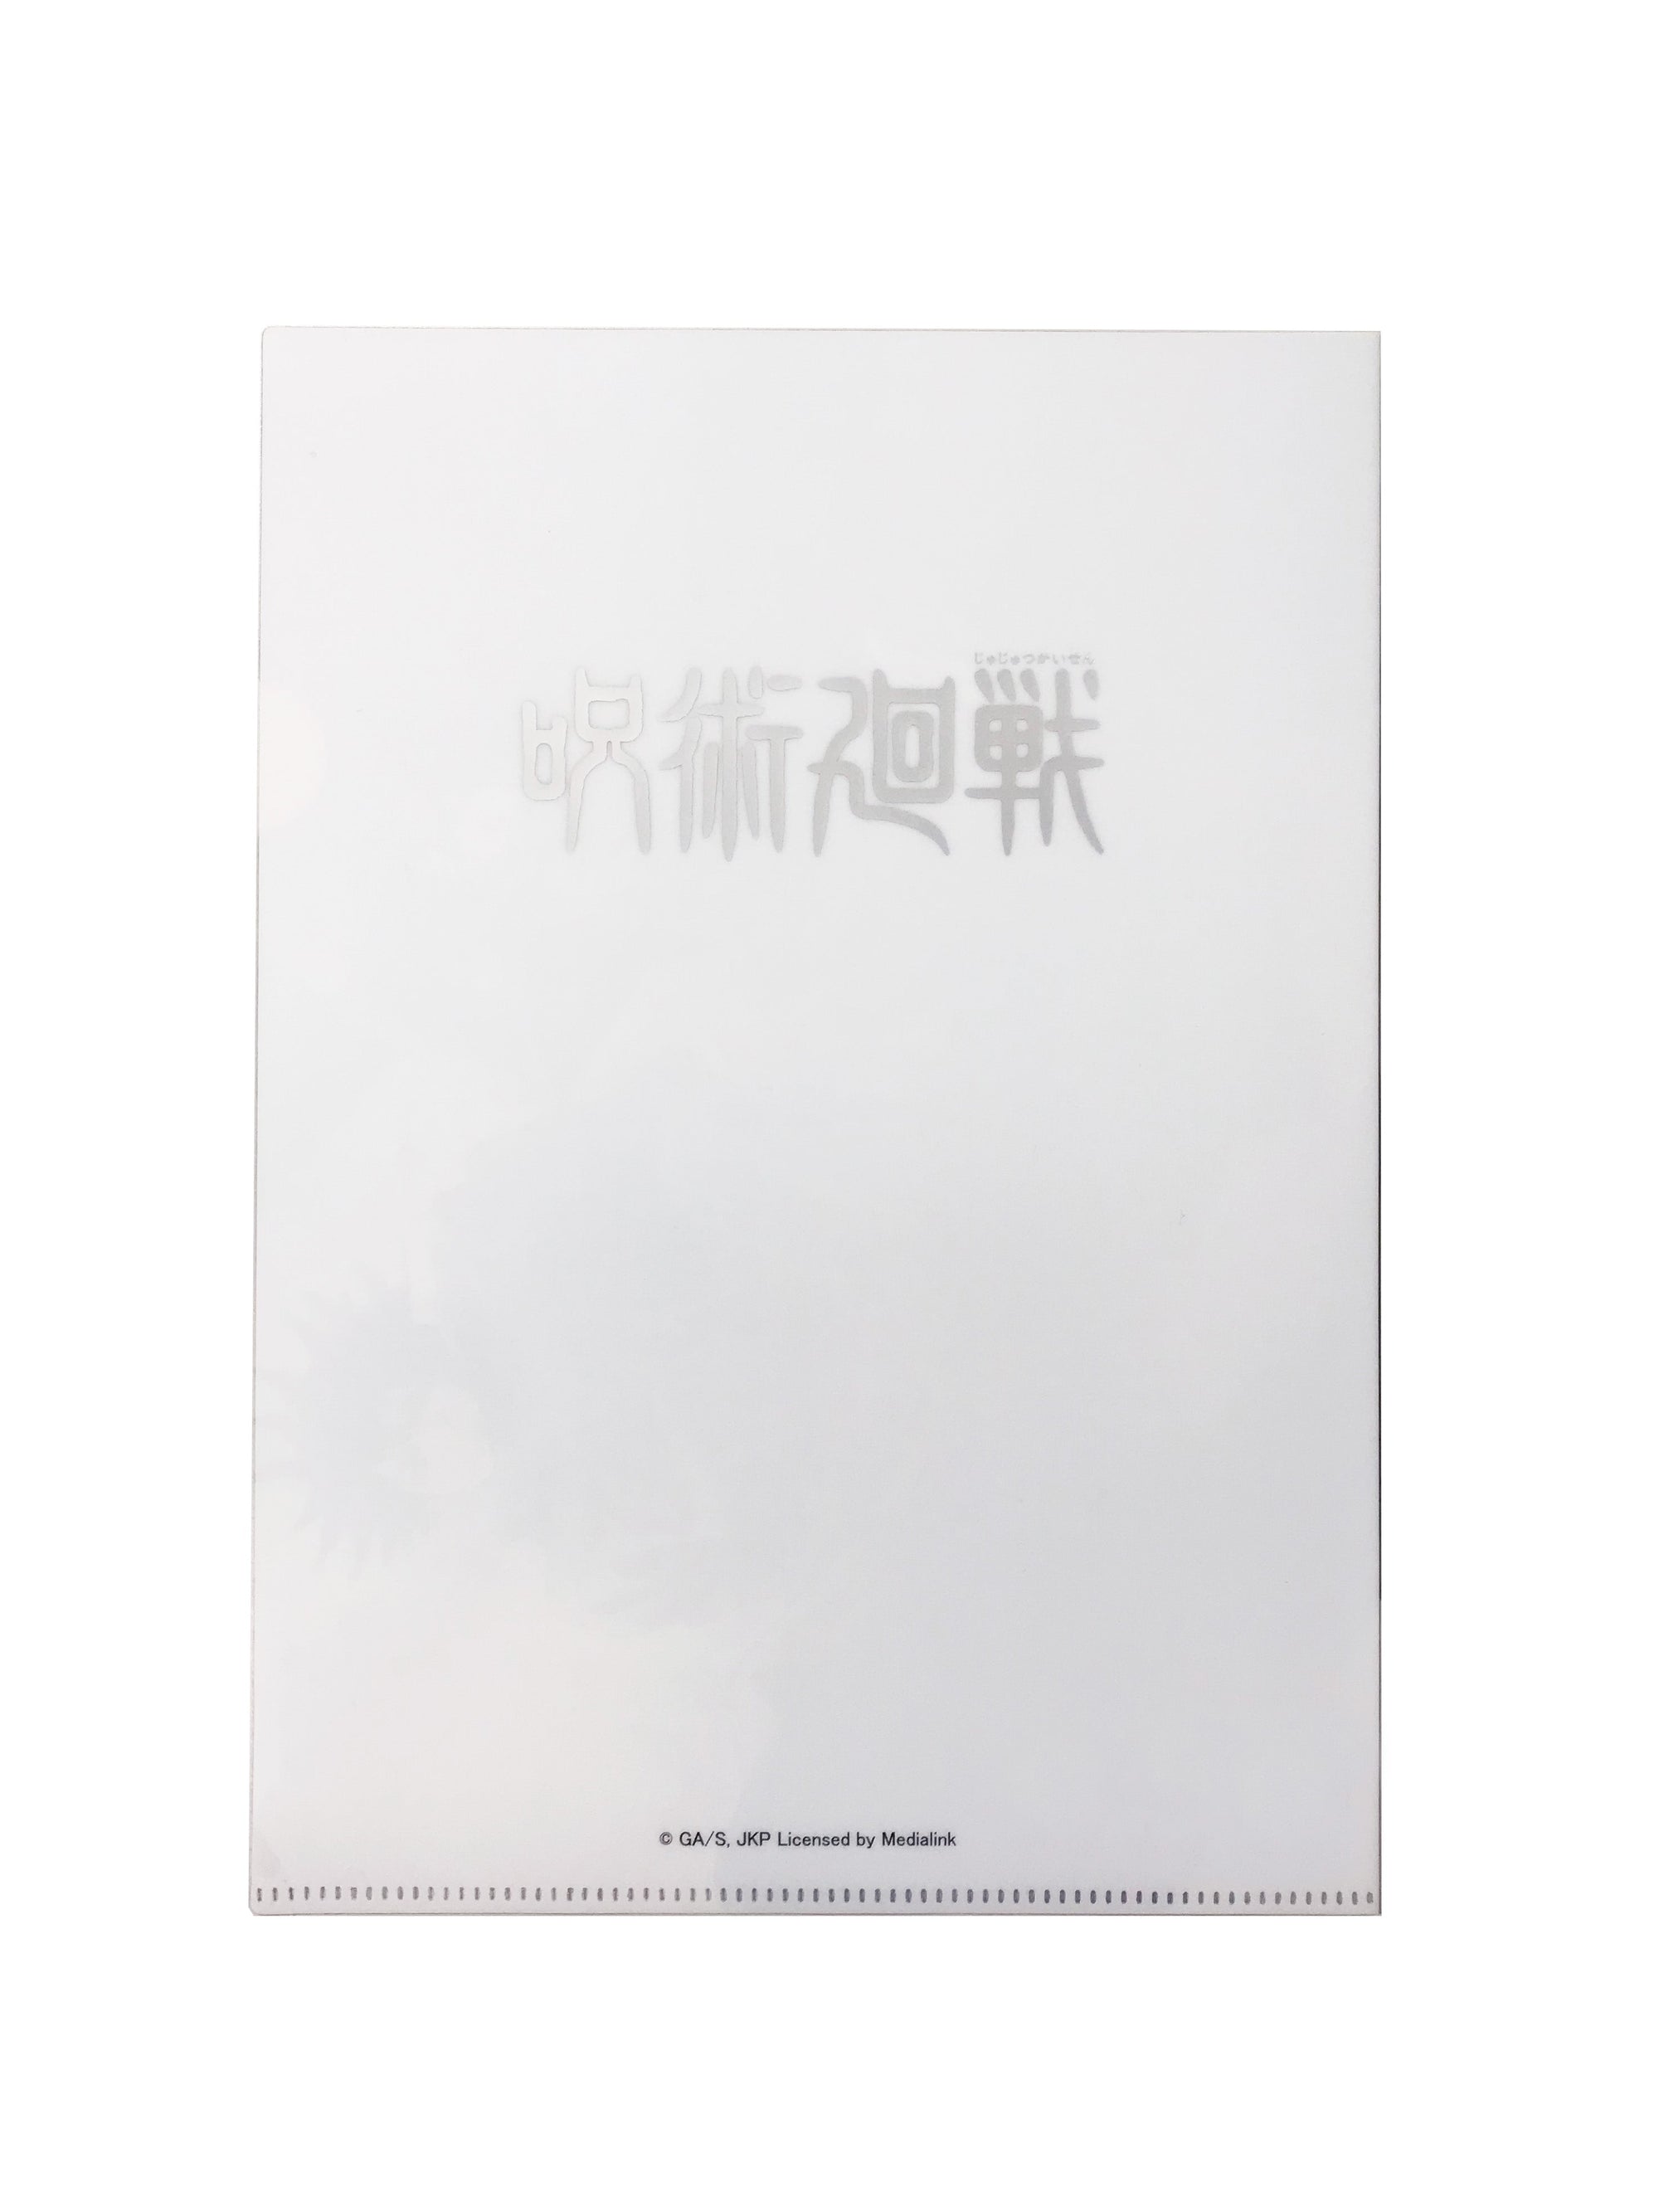 Medialink Jujutsu Kaisen A4 Folder 02